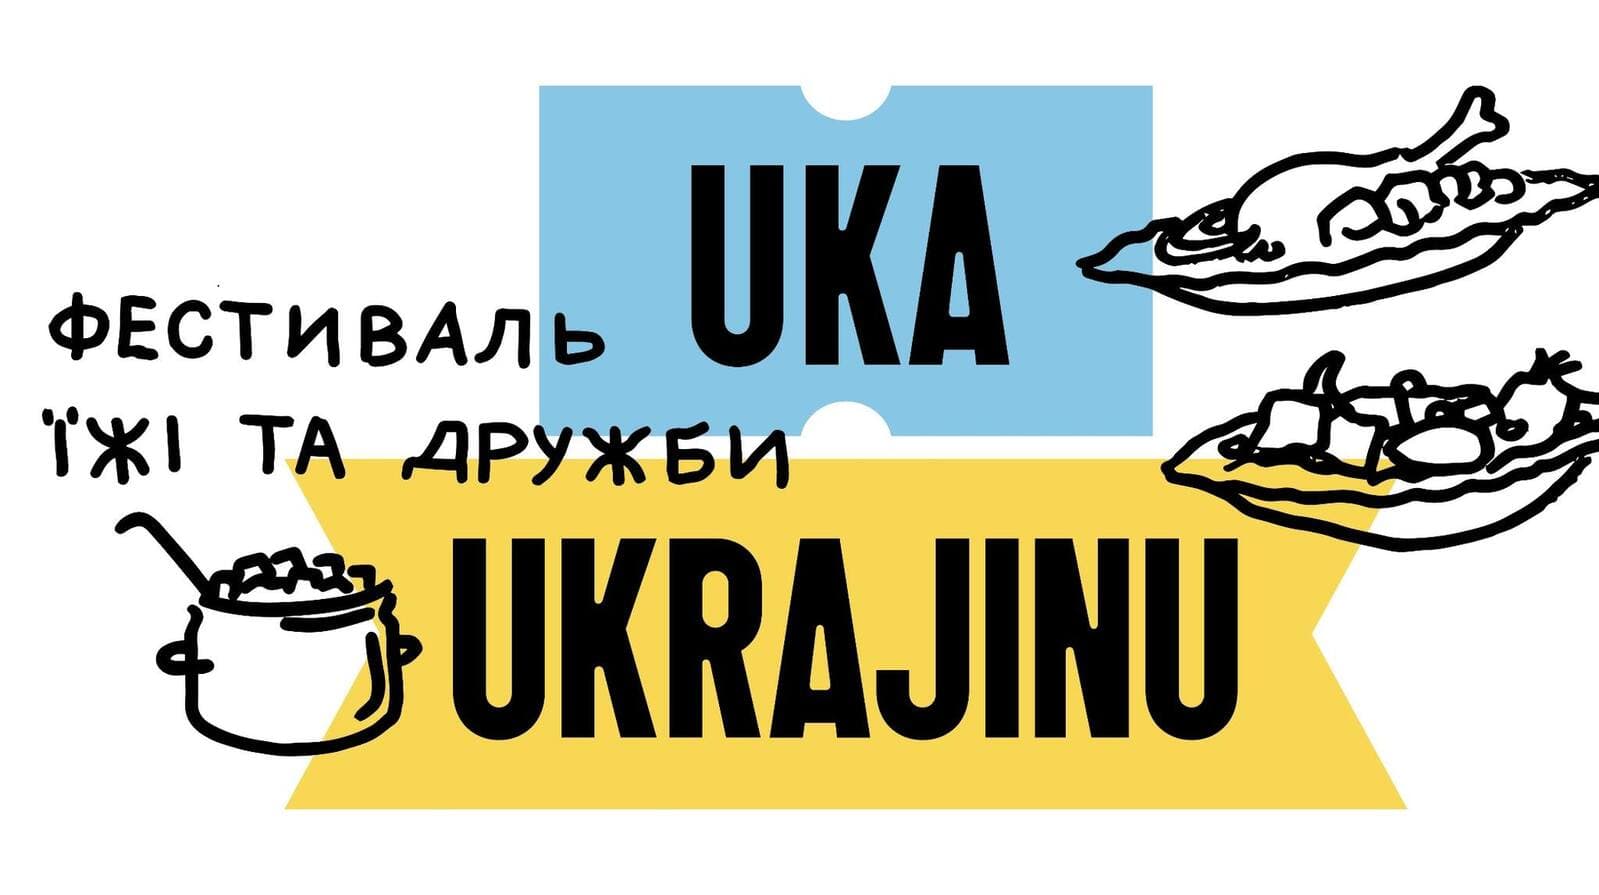 18 мая в Праге пройдет фестиваль дружбы и гастрономии UKA UKRAJINU